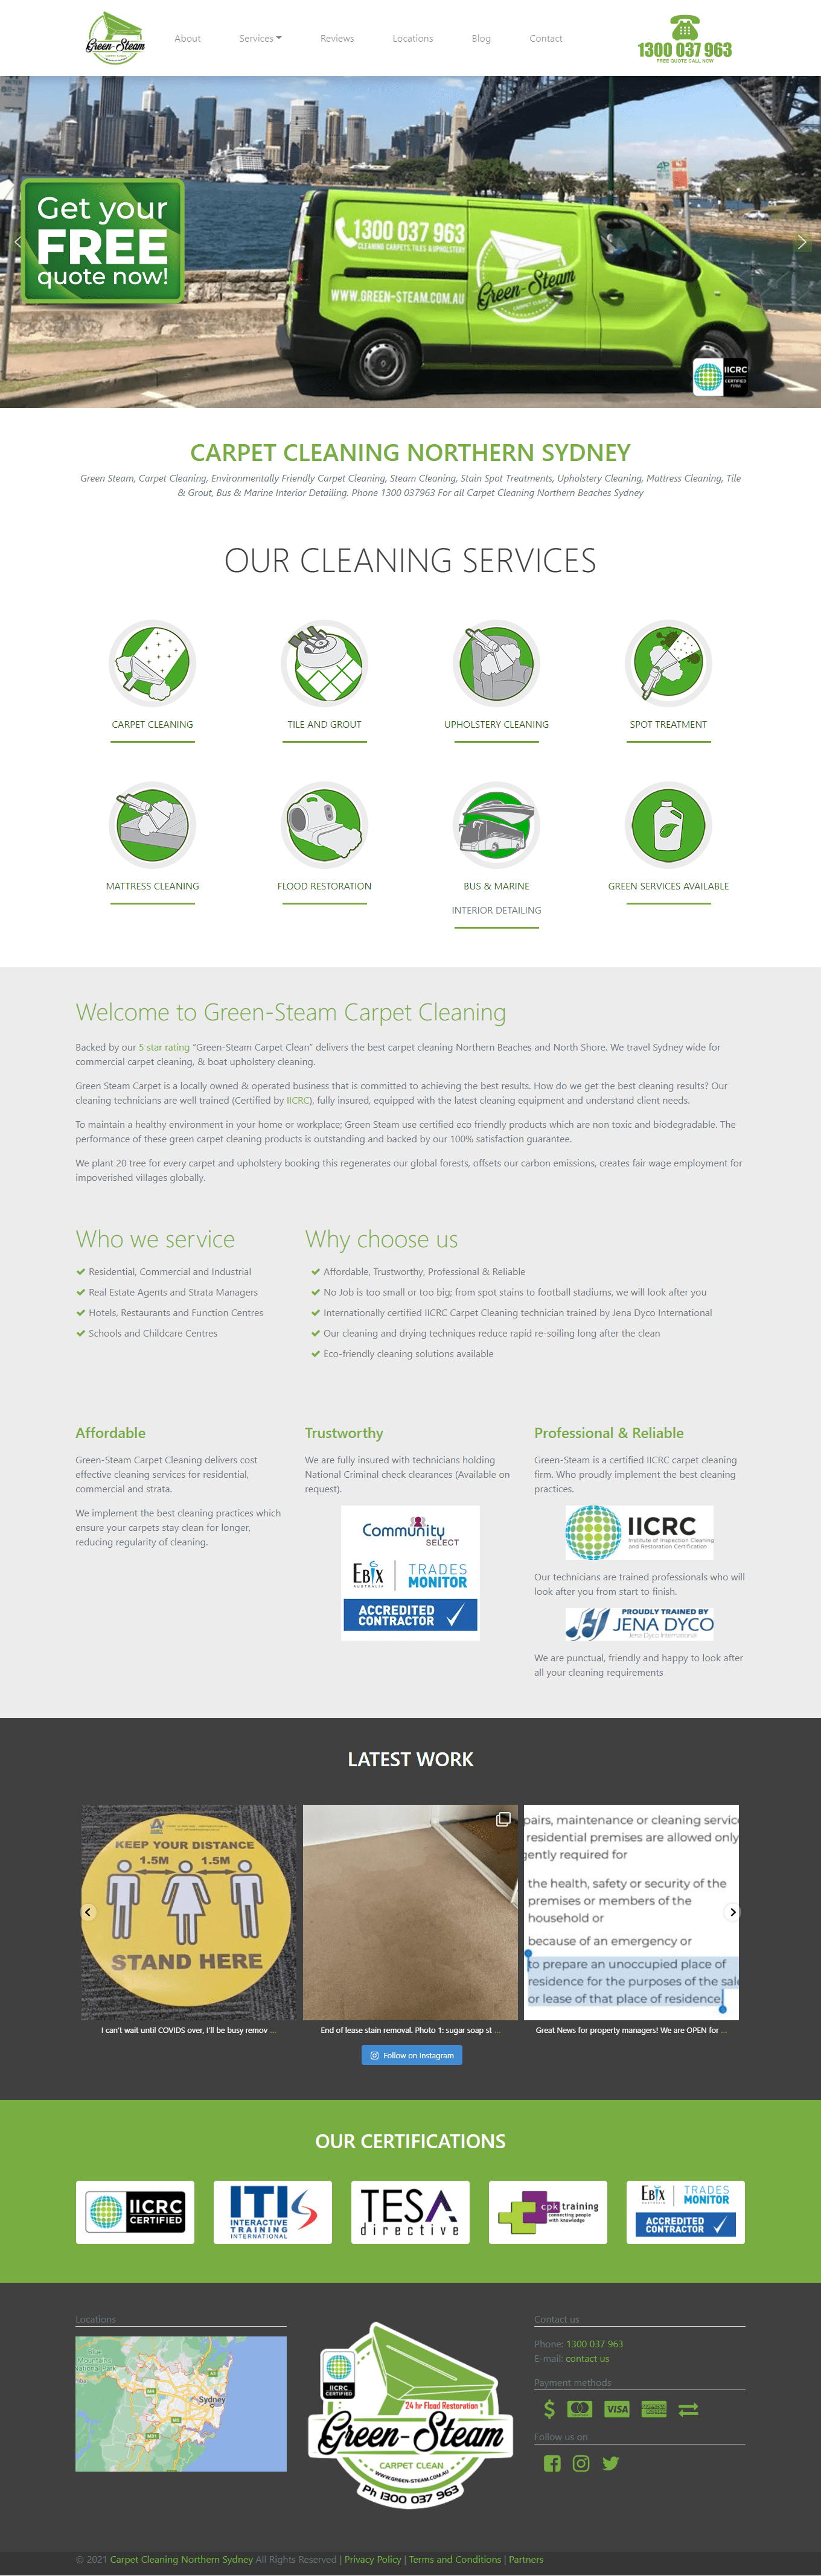 green-steam.com.au website design